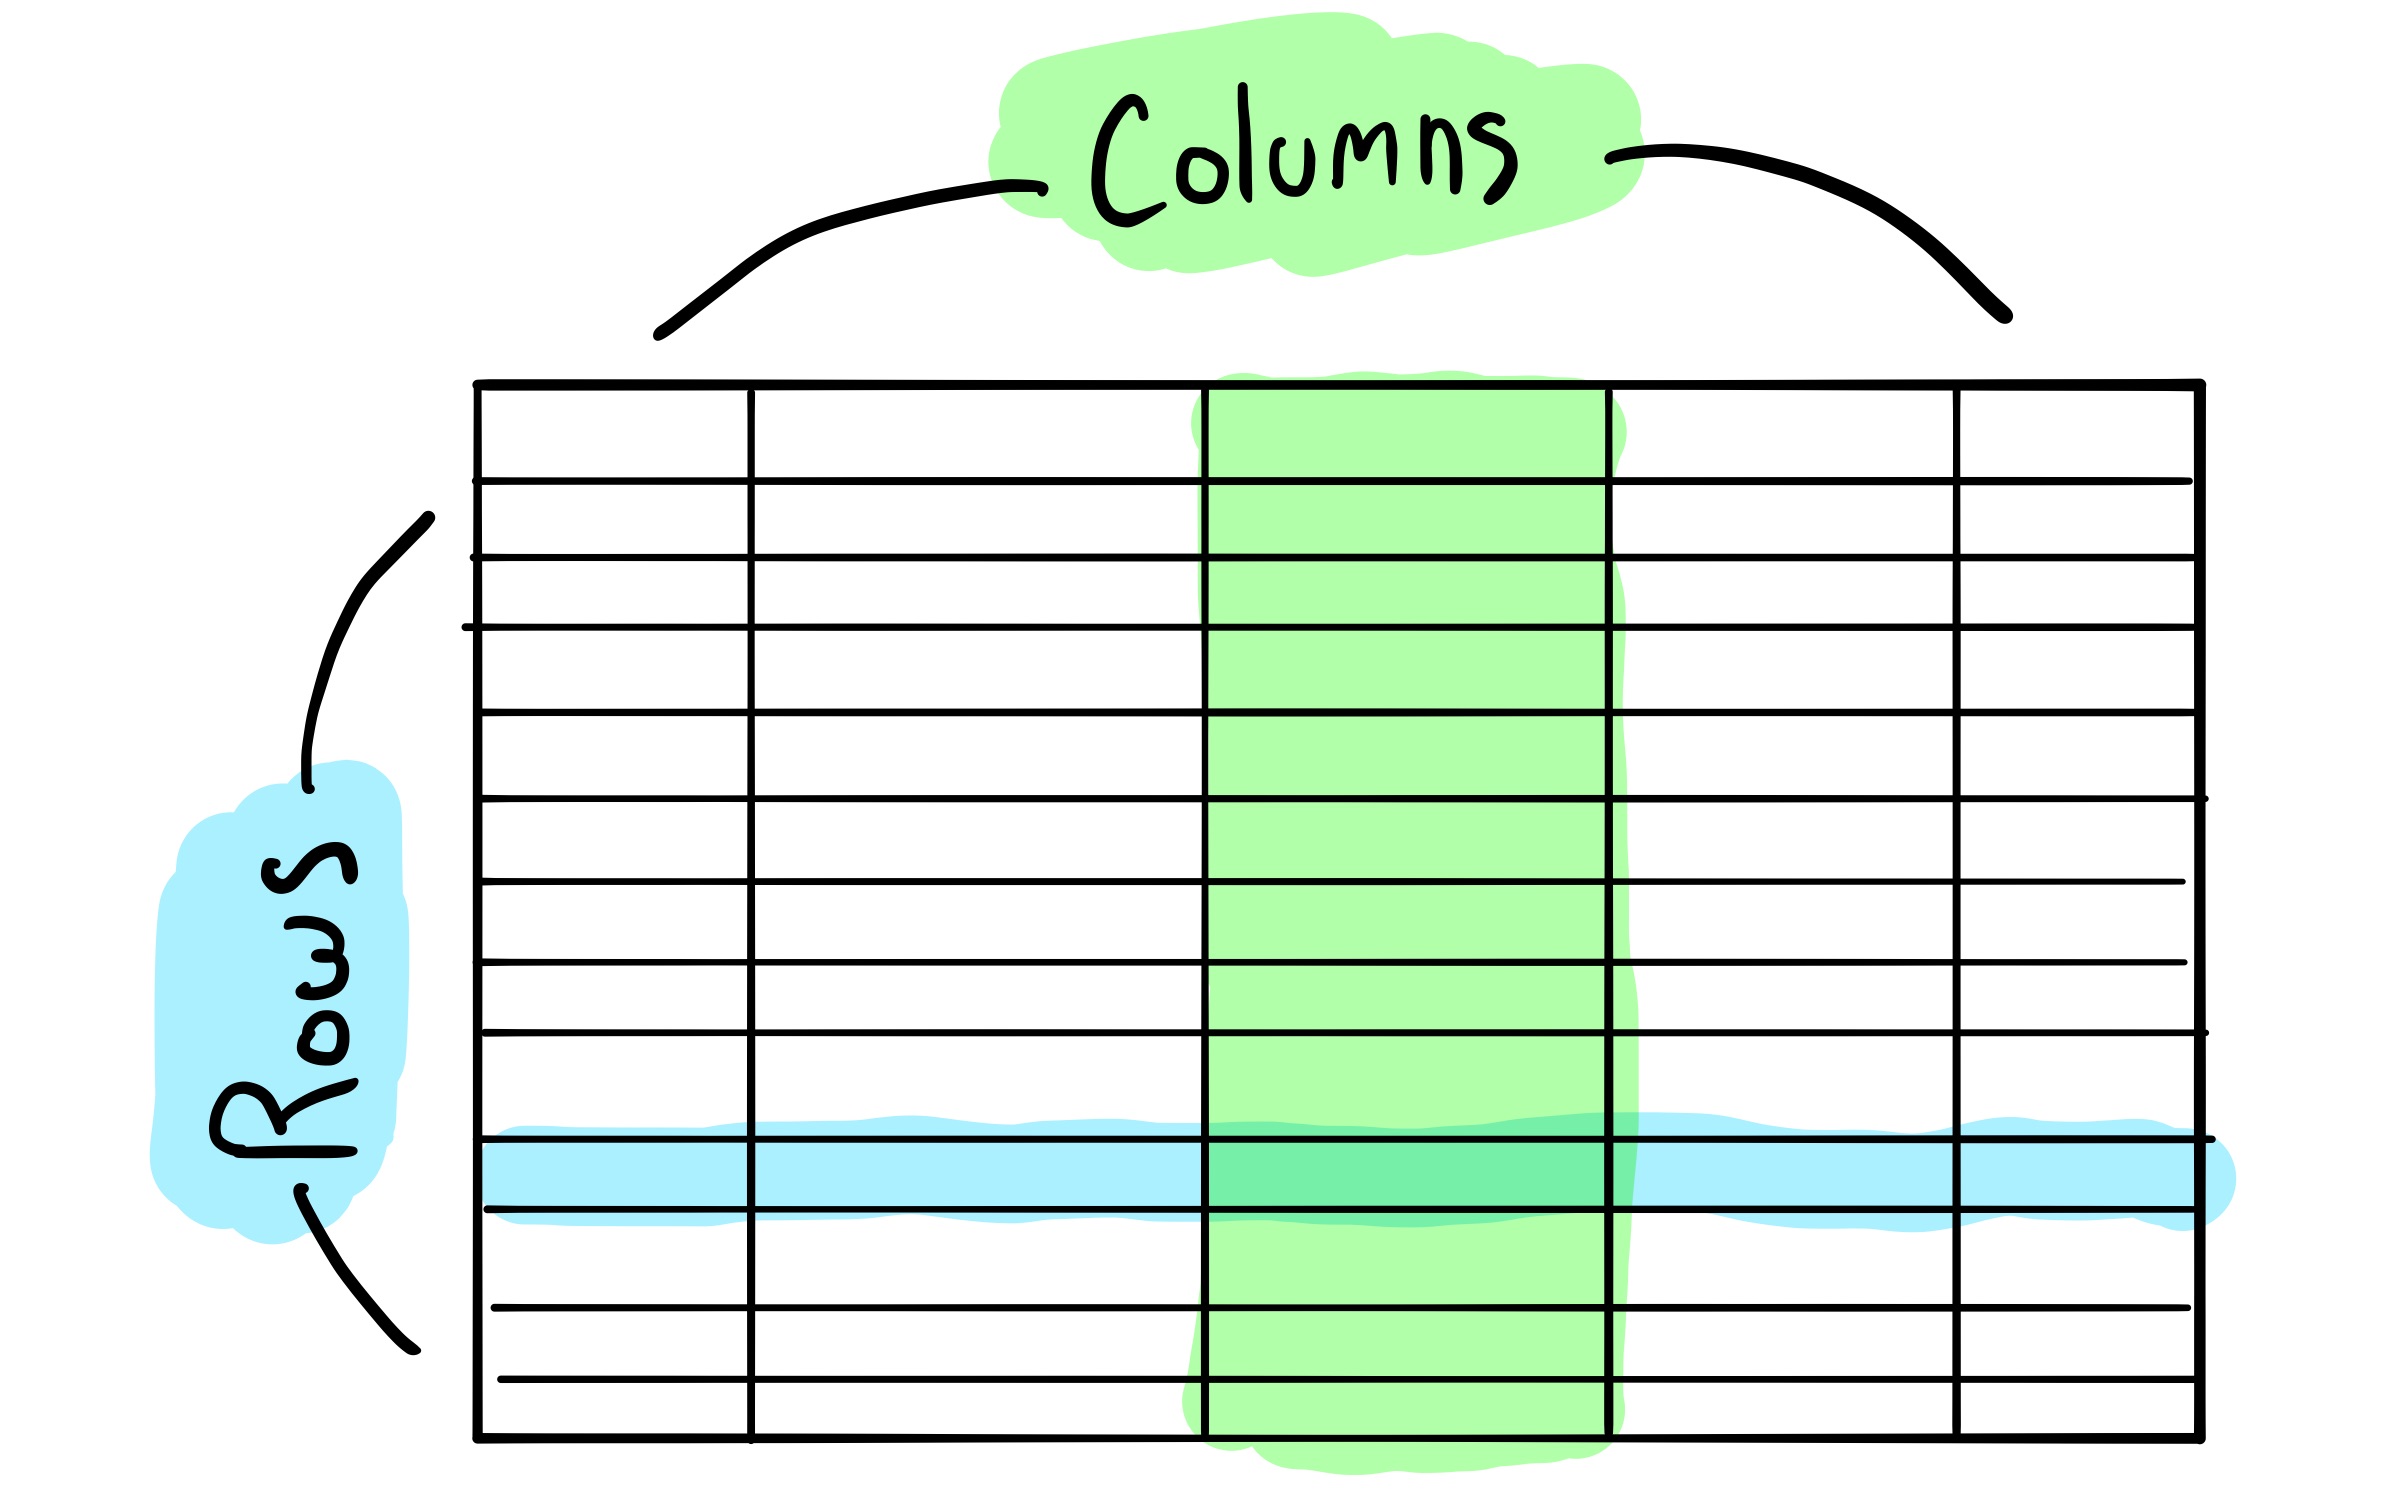 SQL Model Diagram